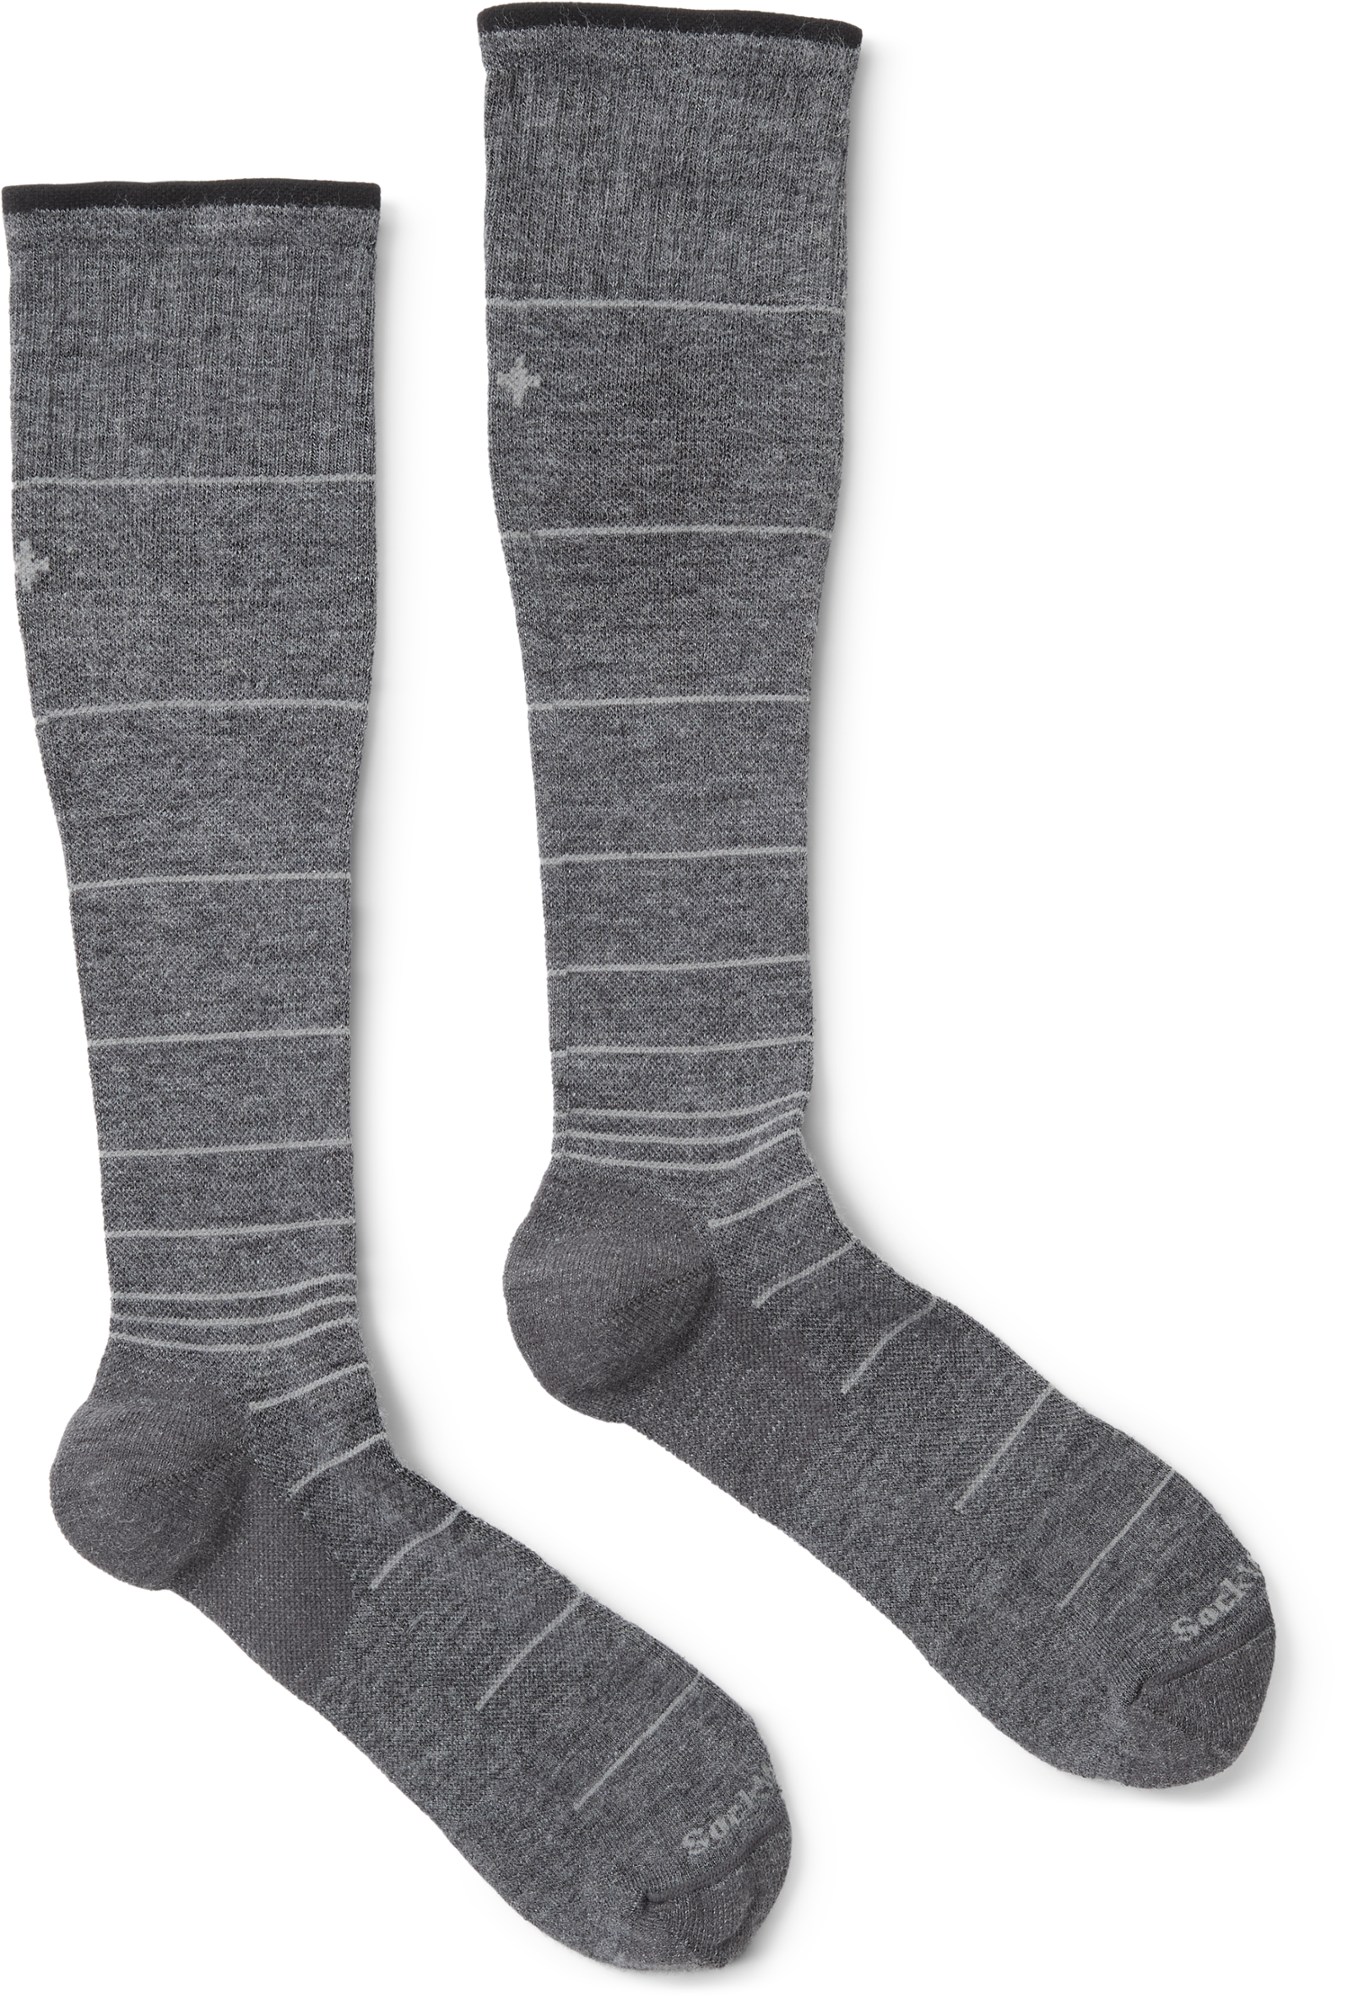 Компрессионные носки Circulator — мужские Sockwell, серый 1 шт компрессионный рукав до икры компрессионные рукава для ног для бега компрессионные носки без ног помогают голени стельки защитные р